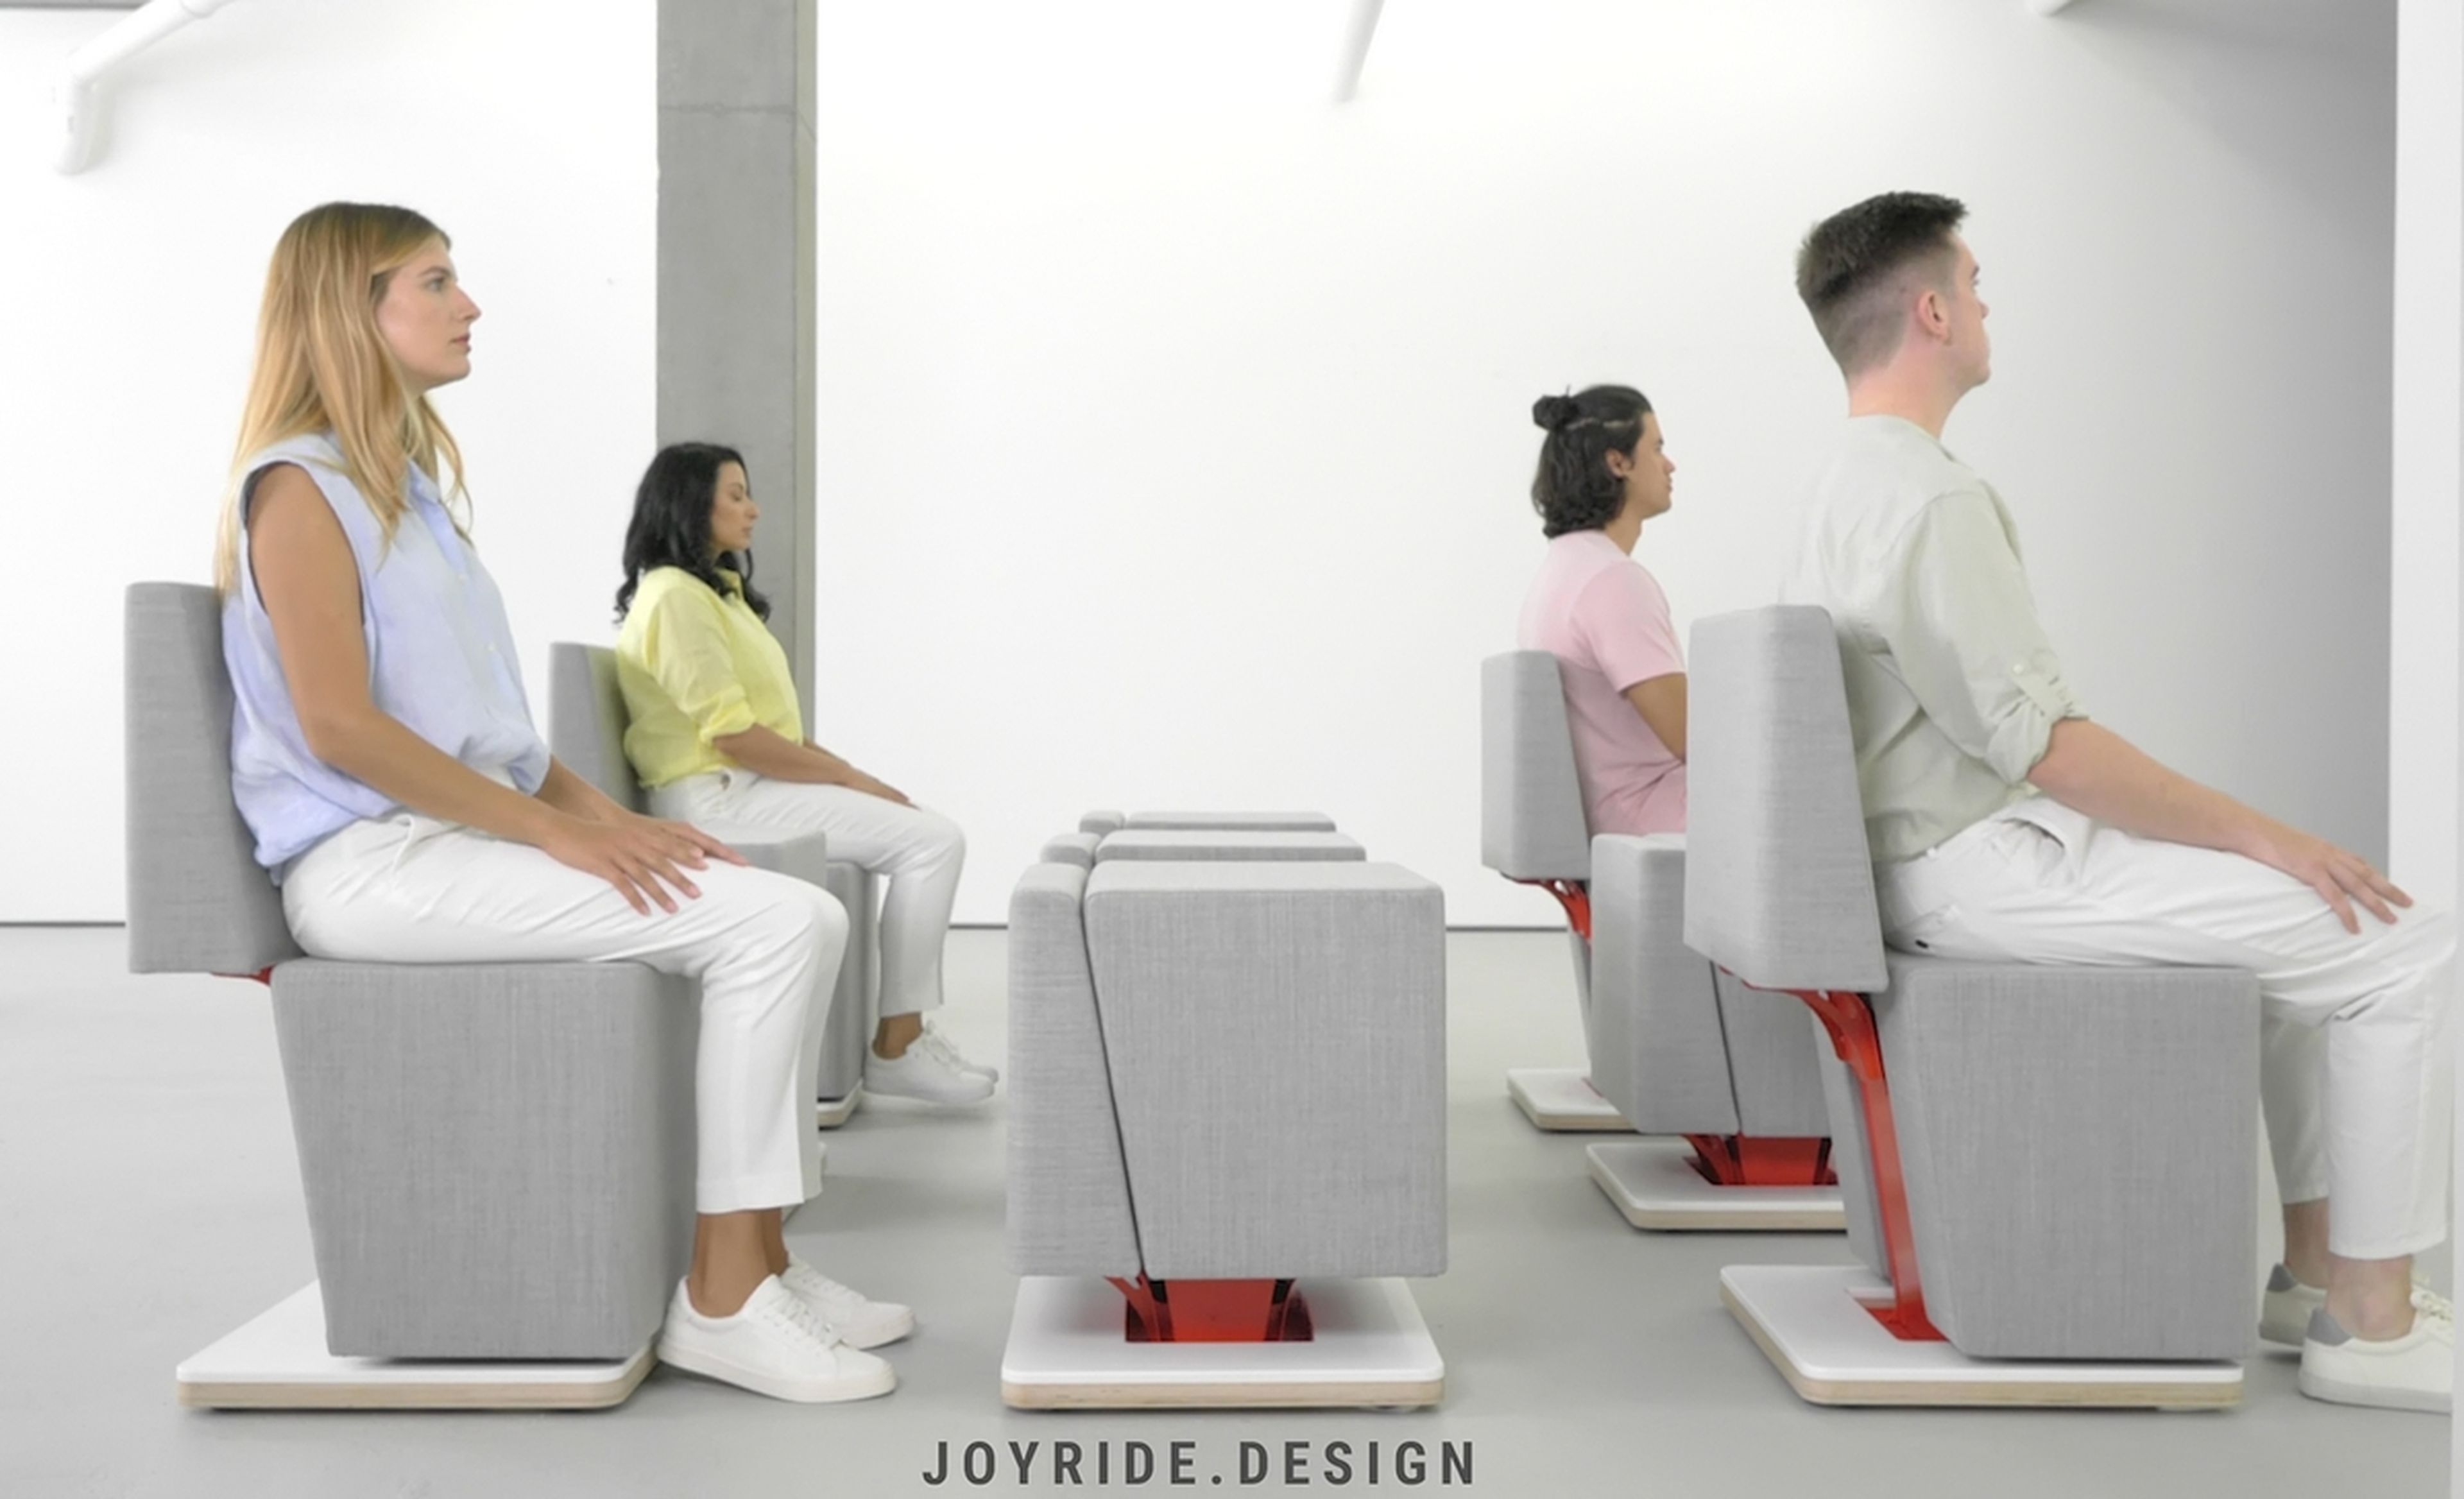 Estos son los primeros muebles sensibles diseñados para las naves espaciales